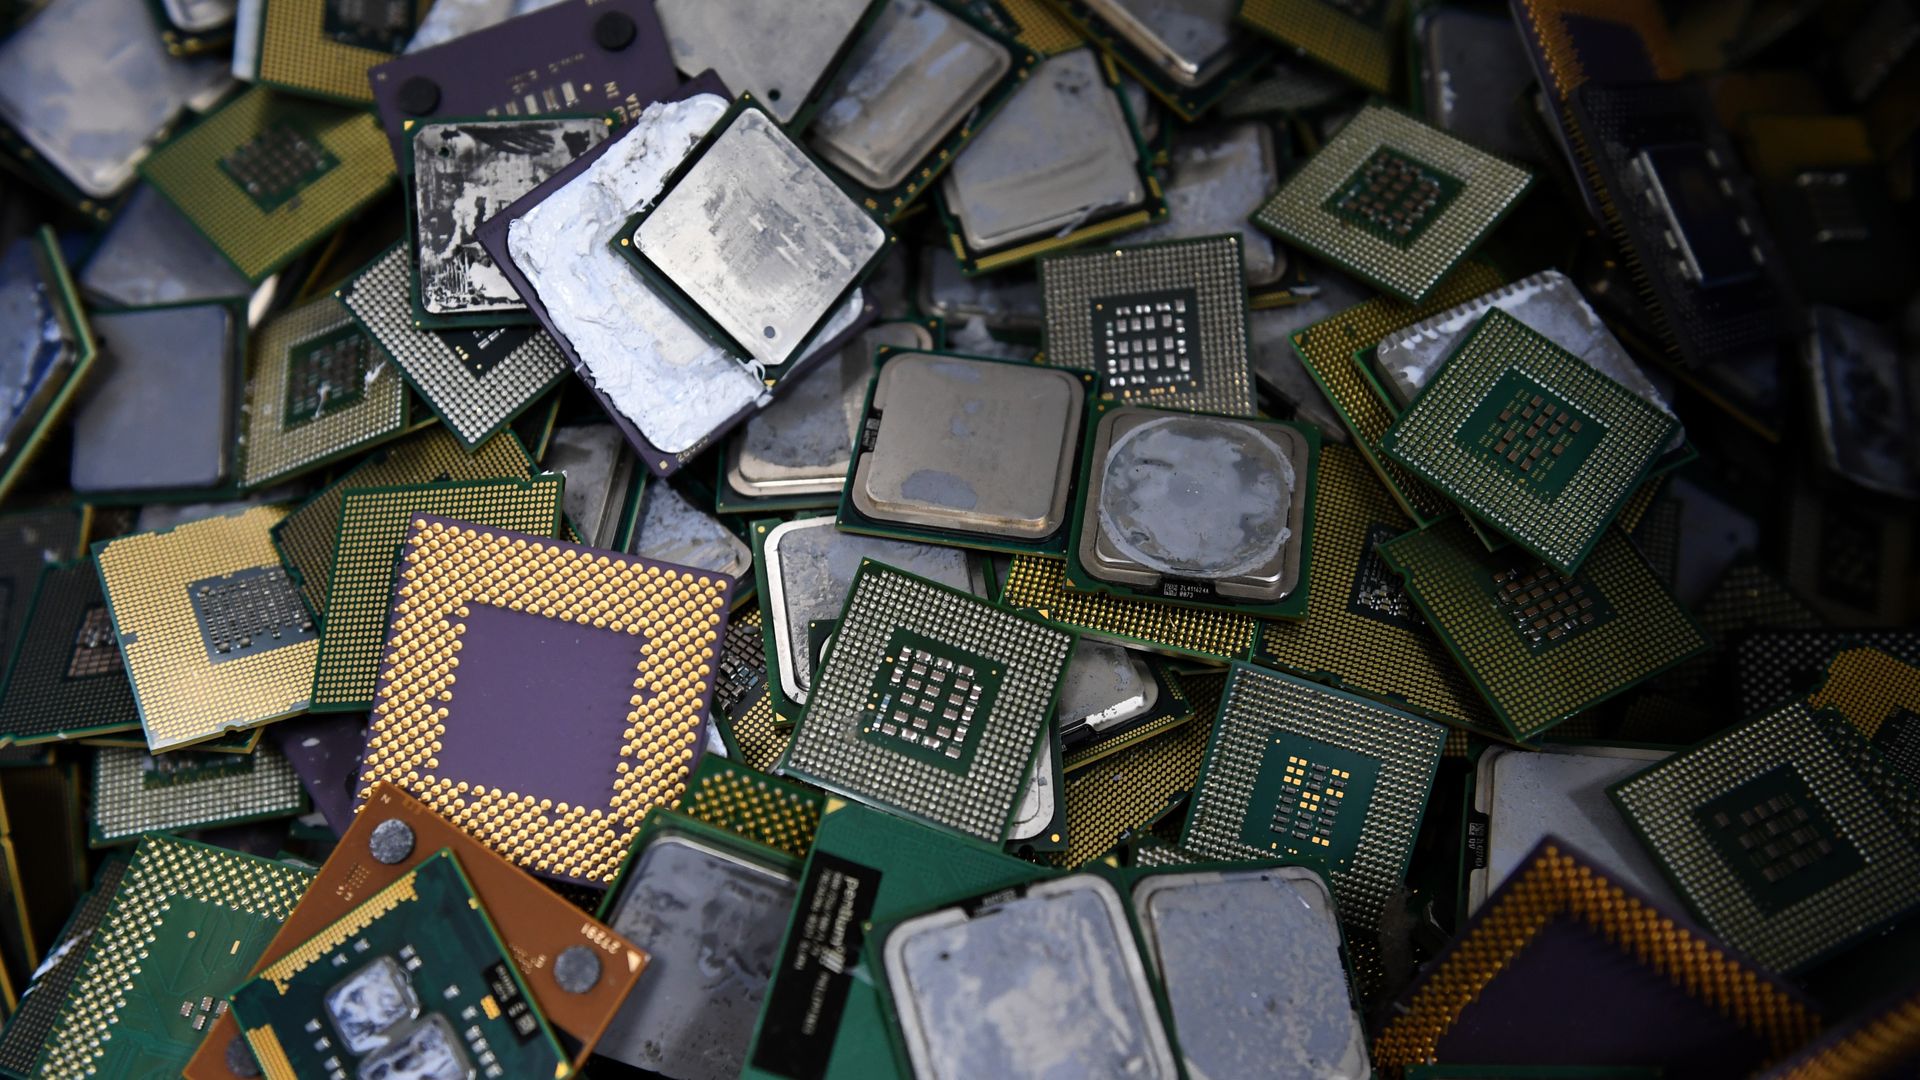 A pile of CPUs